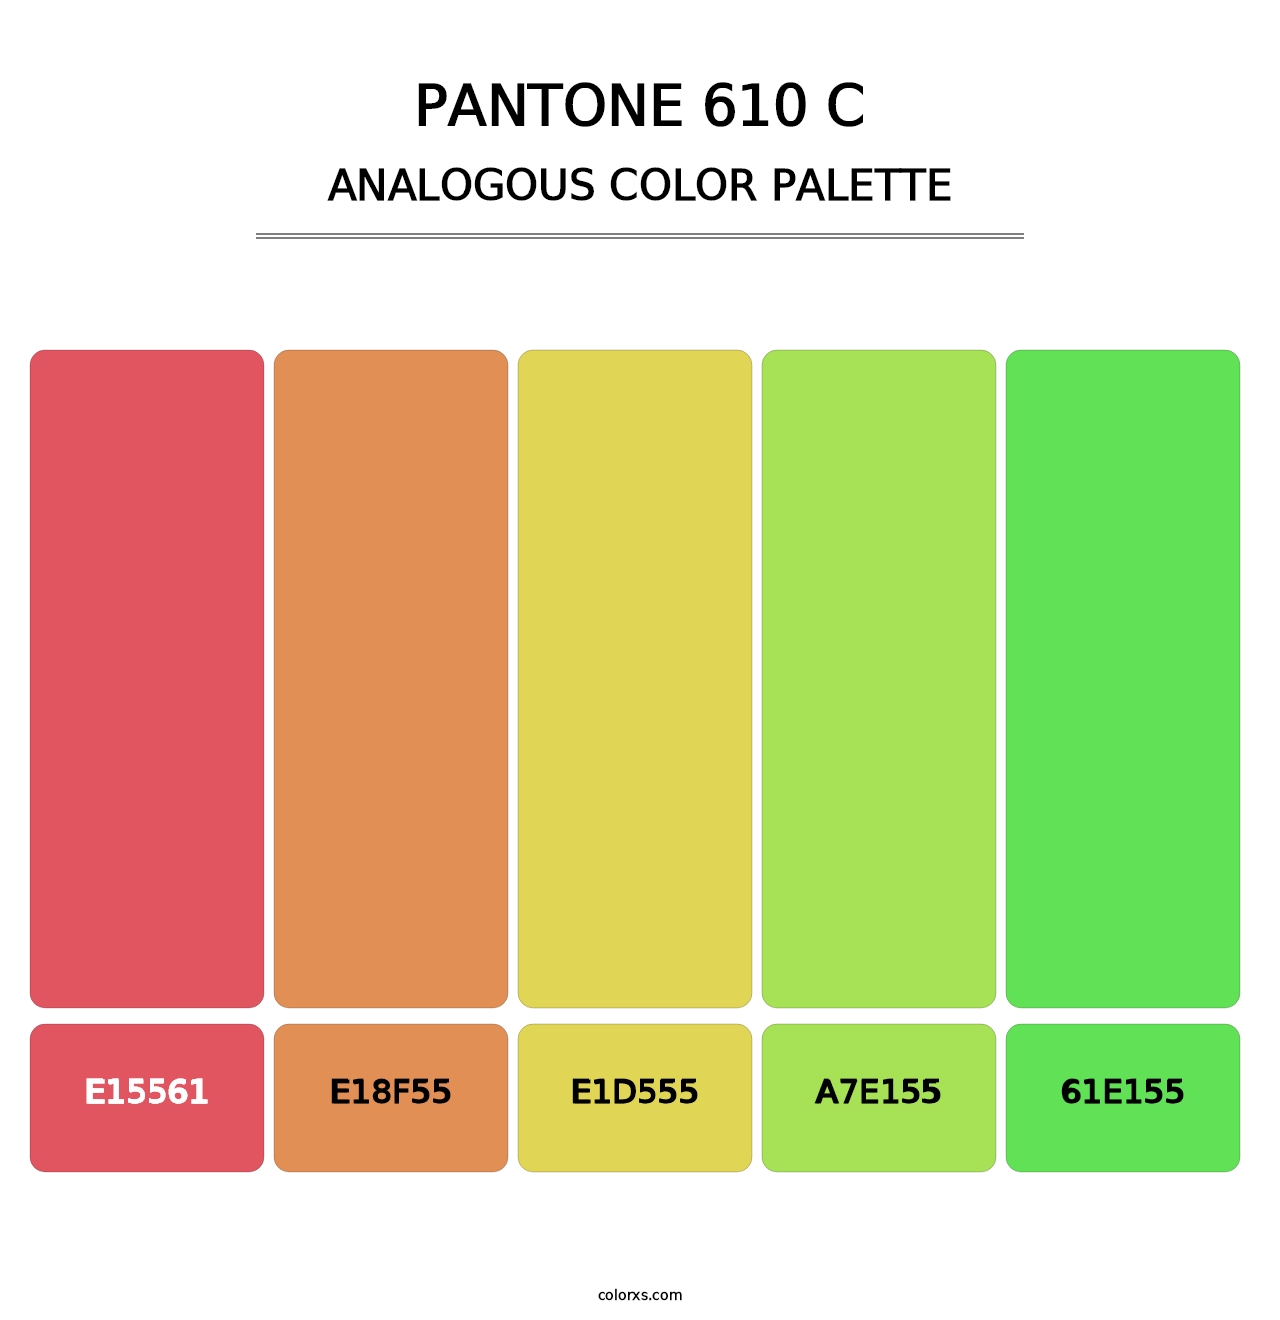 PANTONE 610 C - Analogous Color Palette